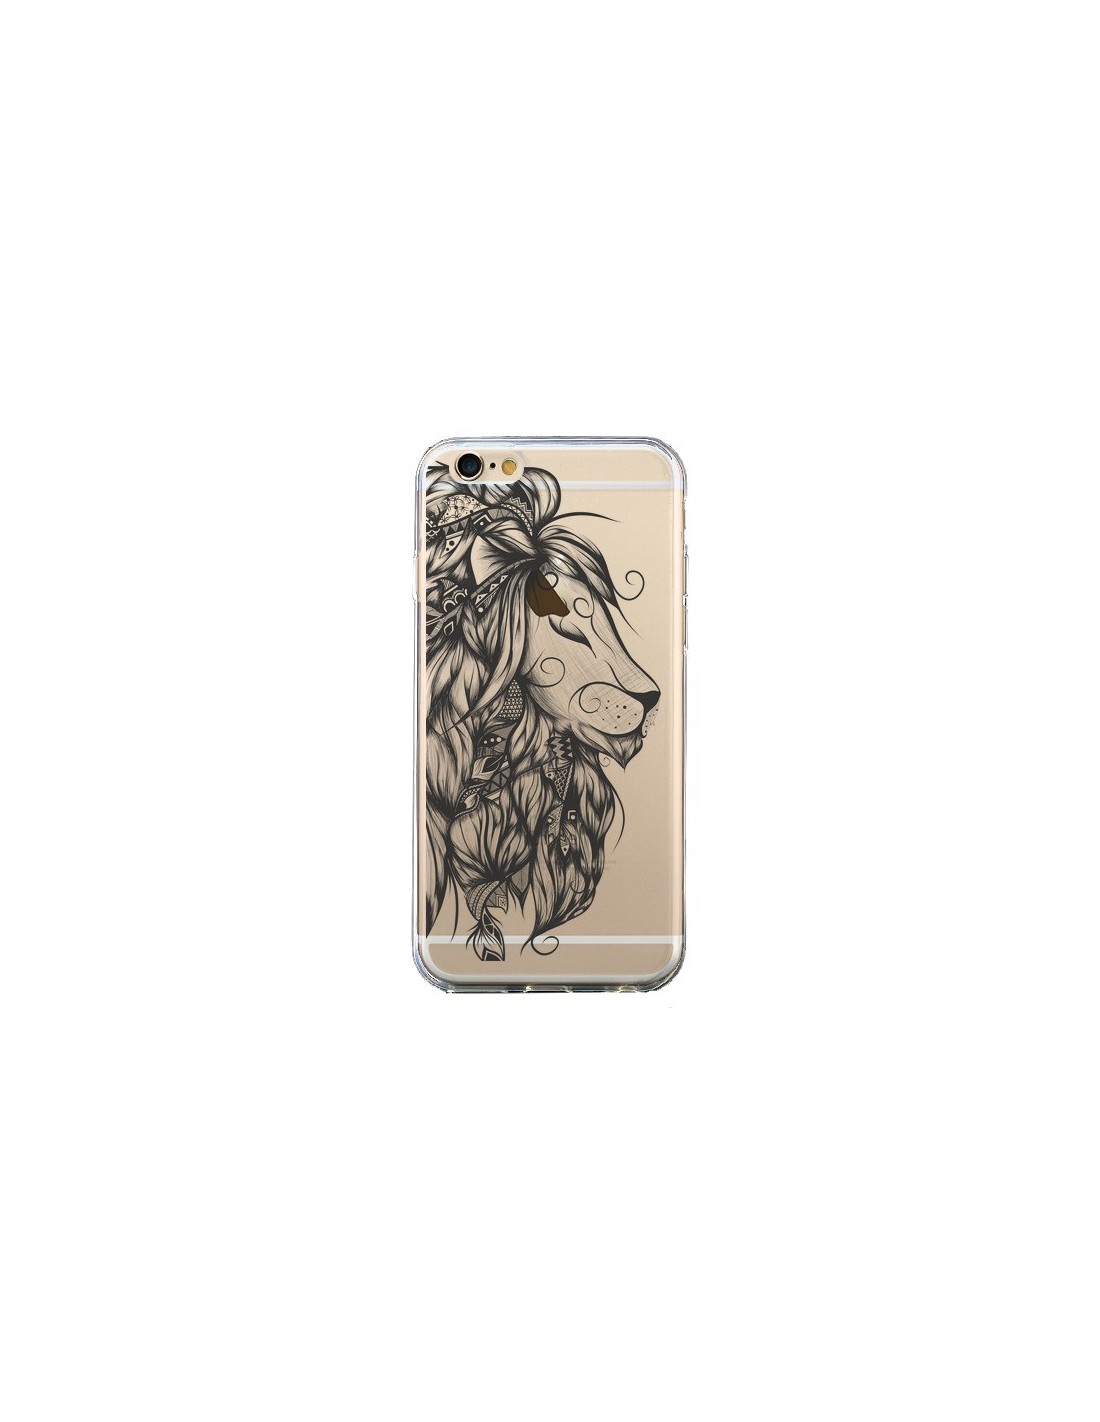 coque lion iphone 6